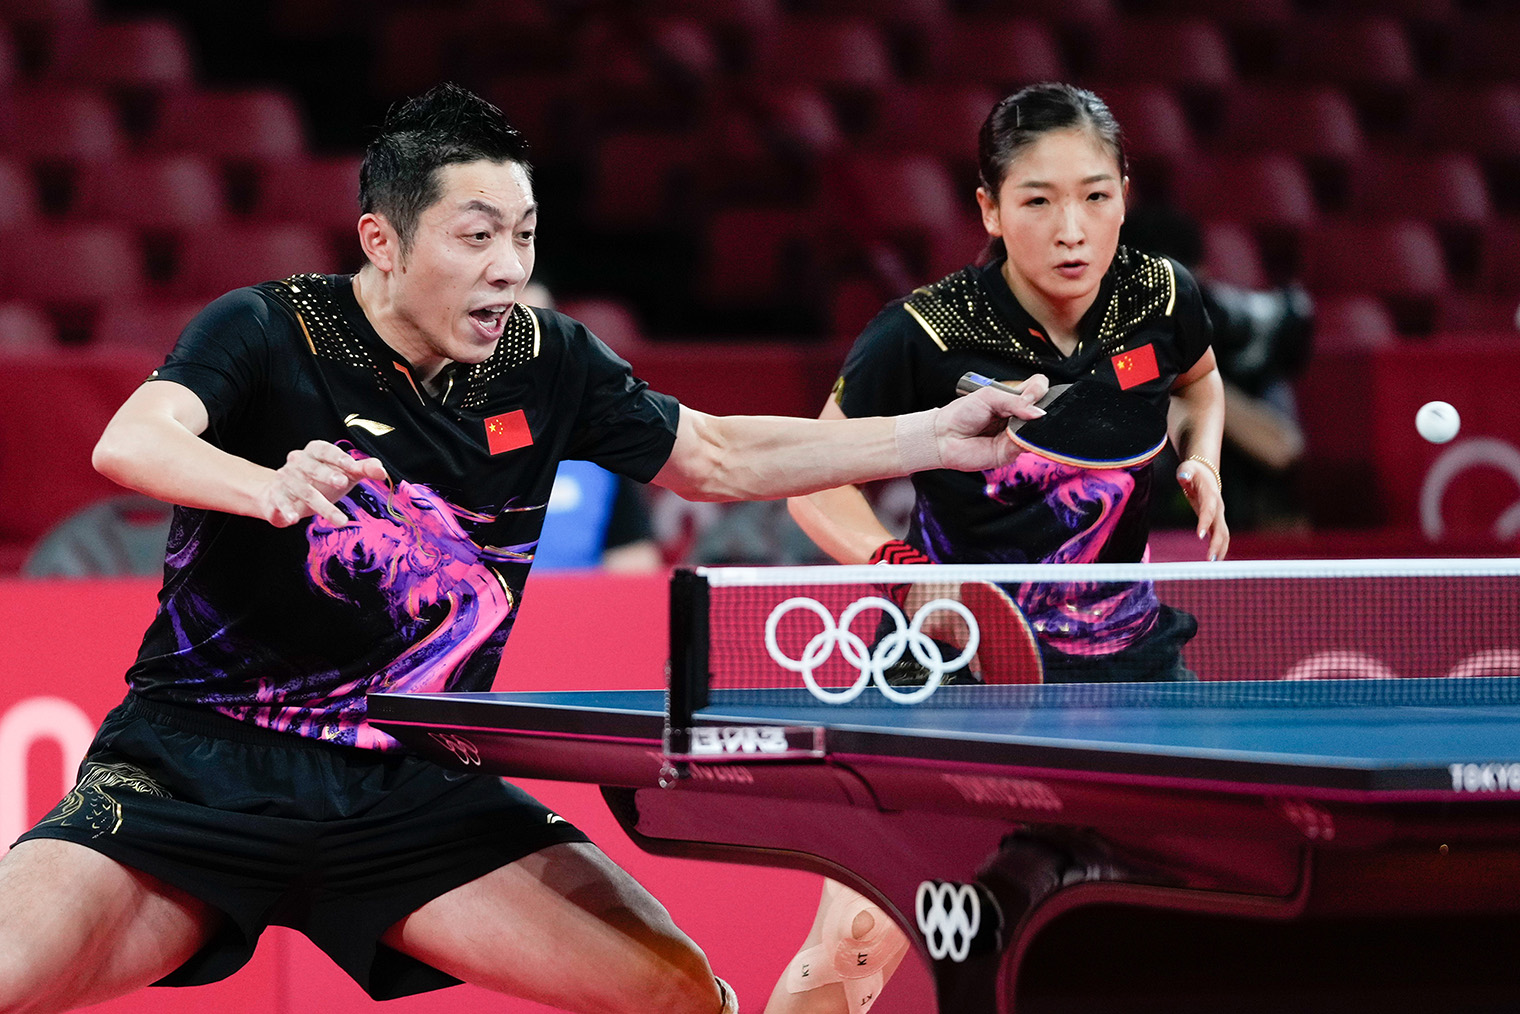 Финал смешанного парного разряда на Олимпиаде 2020 года в Токио. Фотография: Wei Zheng / CHINASPORTS / VCG / Getty Images